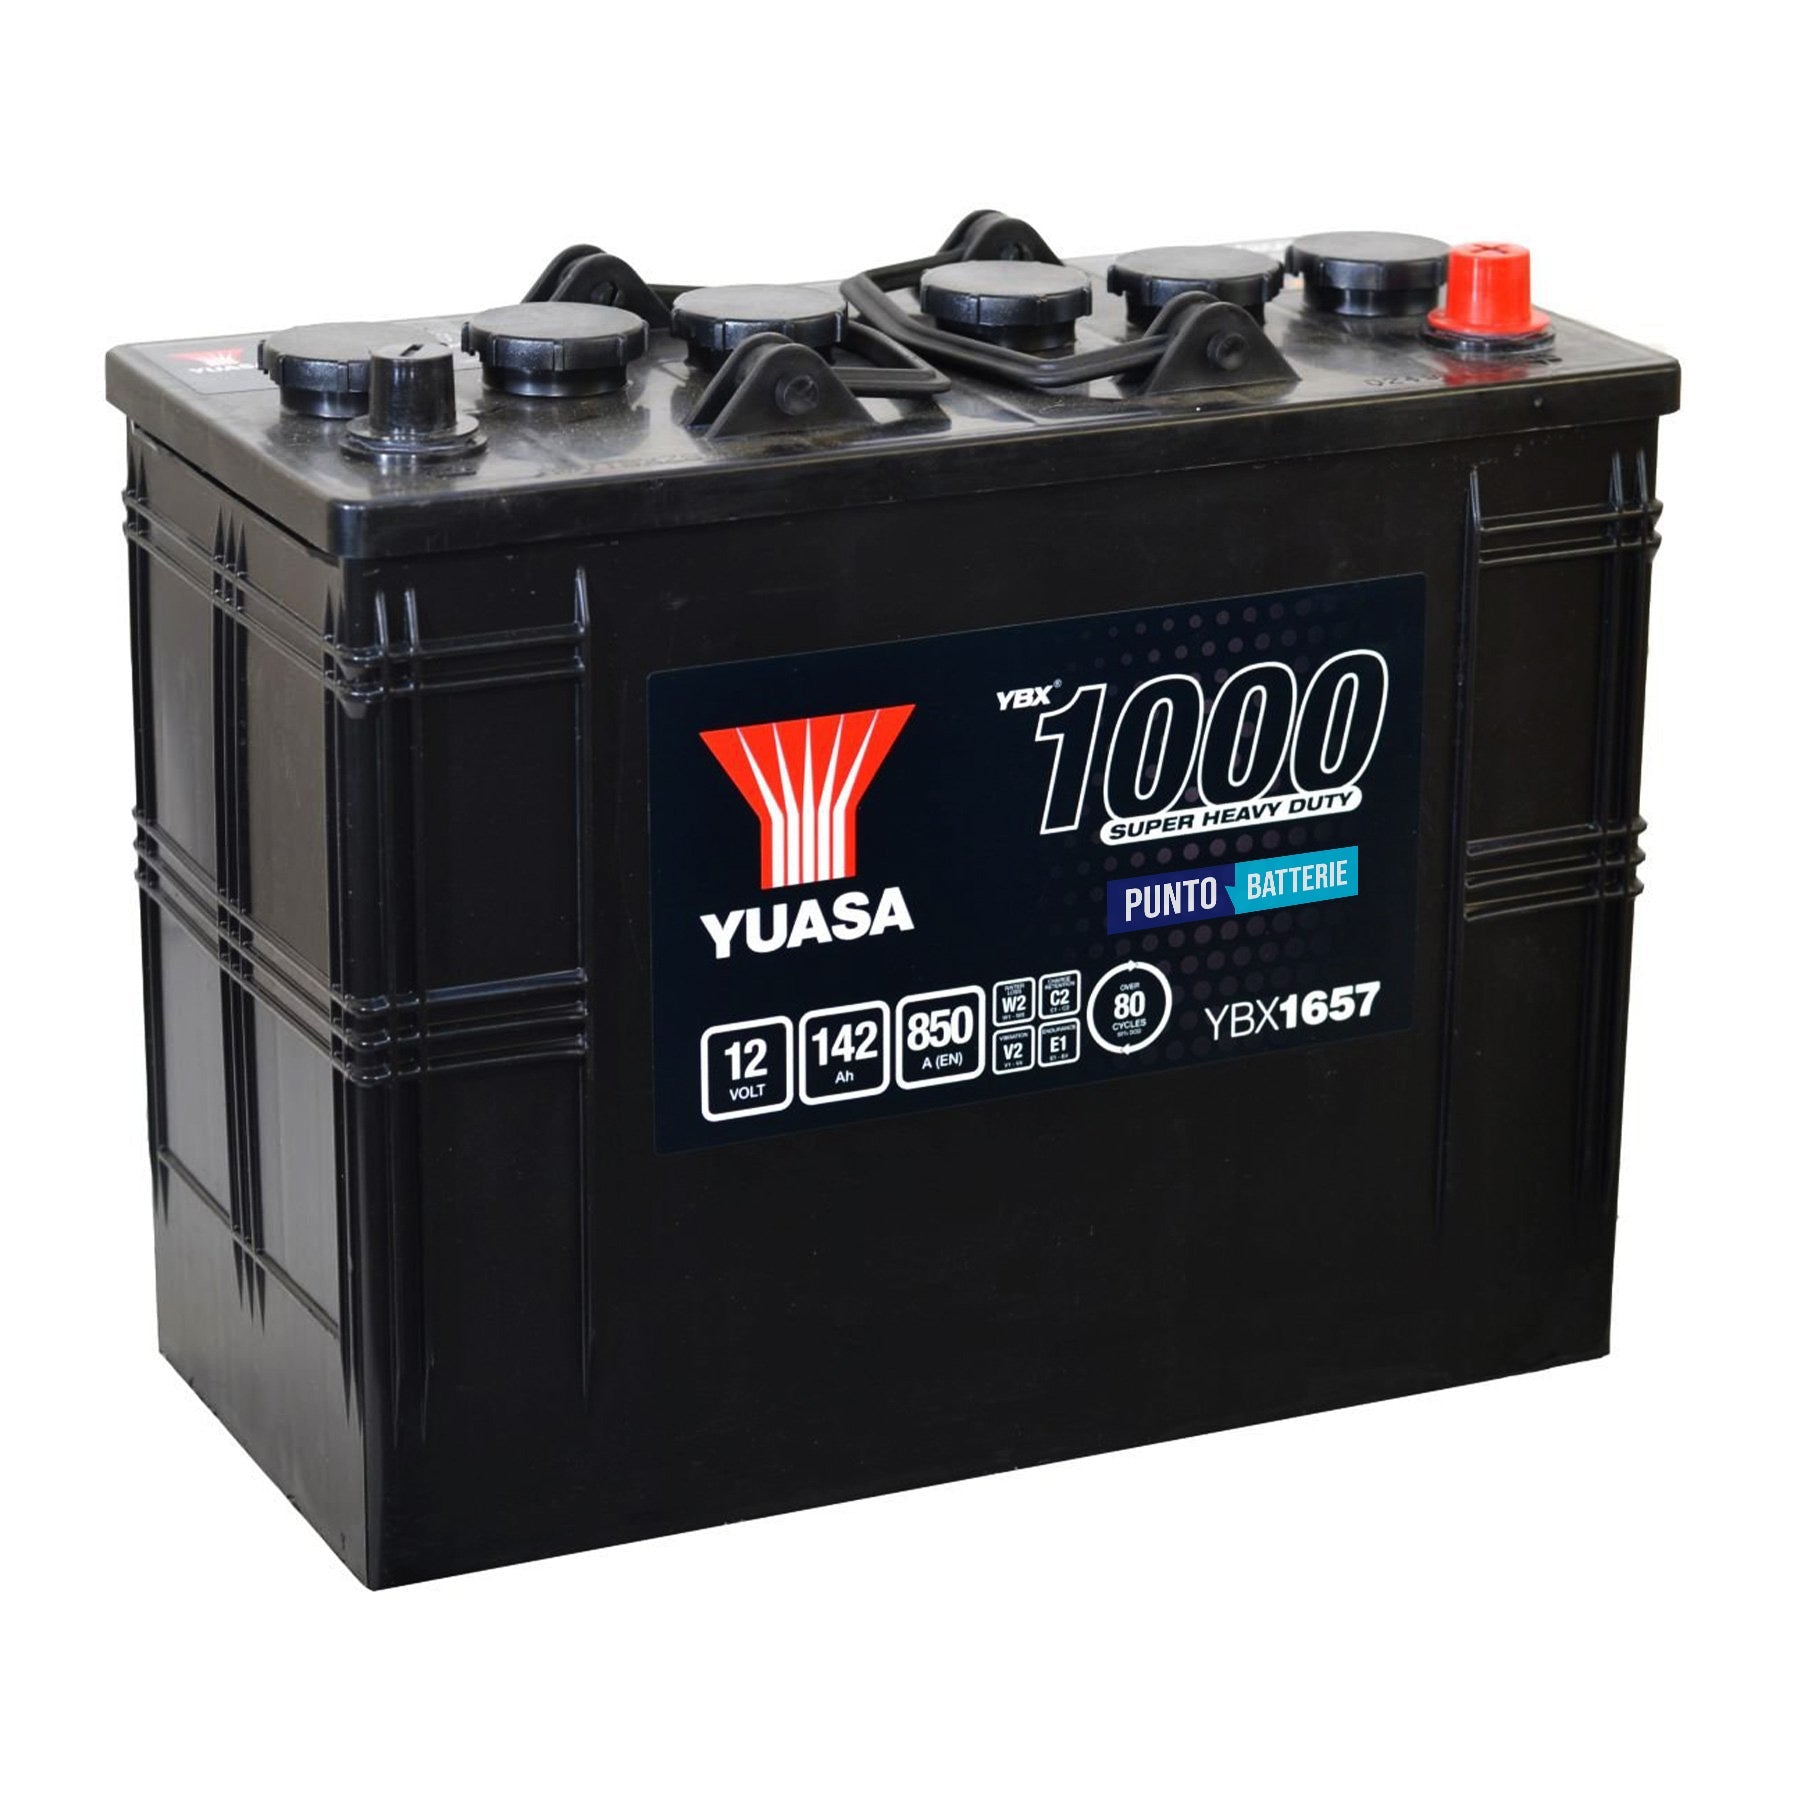 Batteria originale Yuasa YBX1000 YBX1657, dimensioni 345 x 175 x 275, polo positivo a sinistra, 12 volt, 142 amperora, 850 ampere. Batteria per camion e veicoli pesanti.